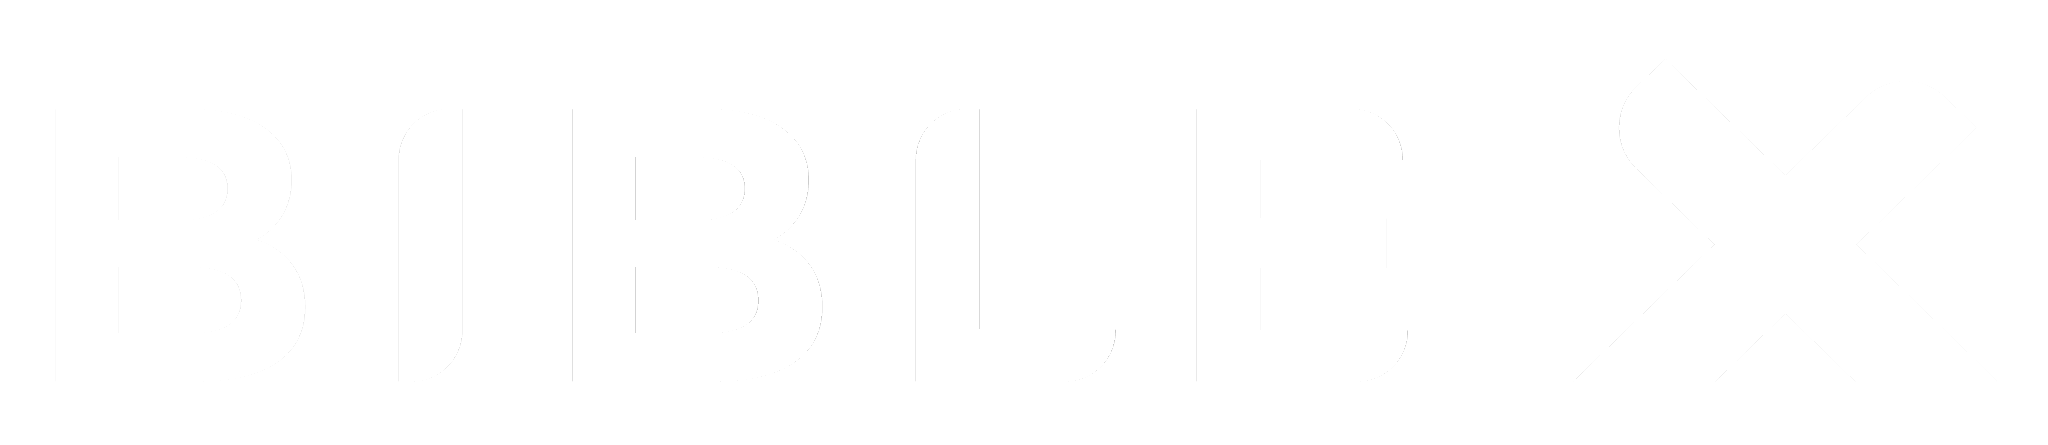 Biblex logo white